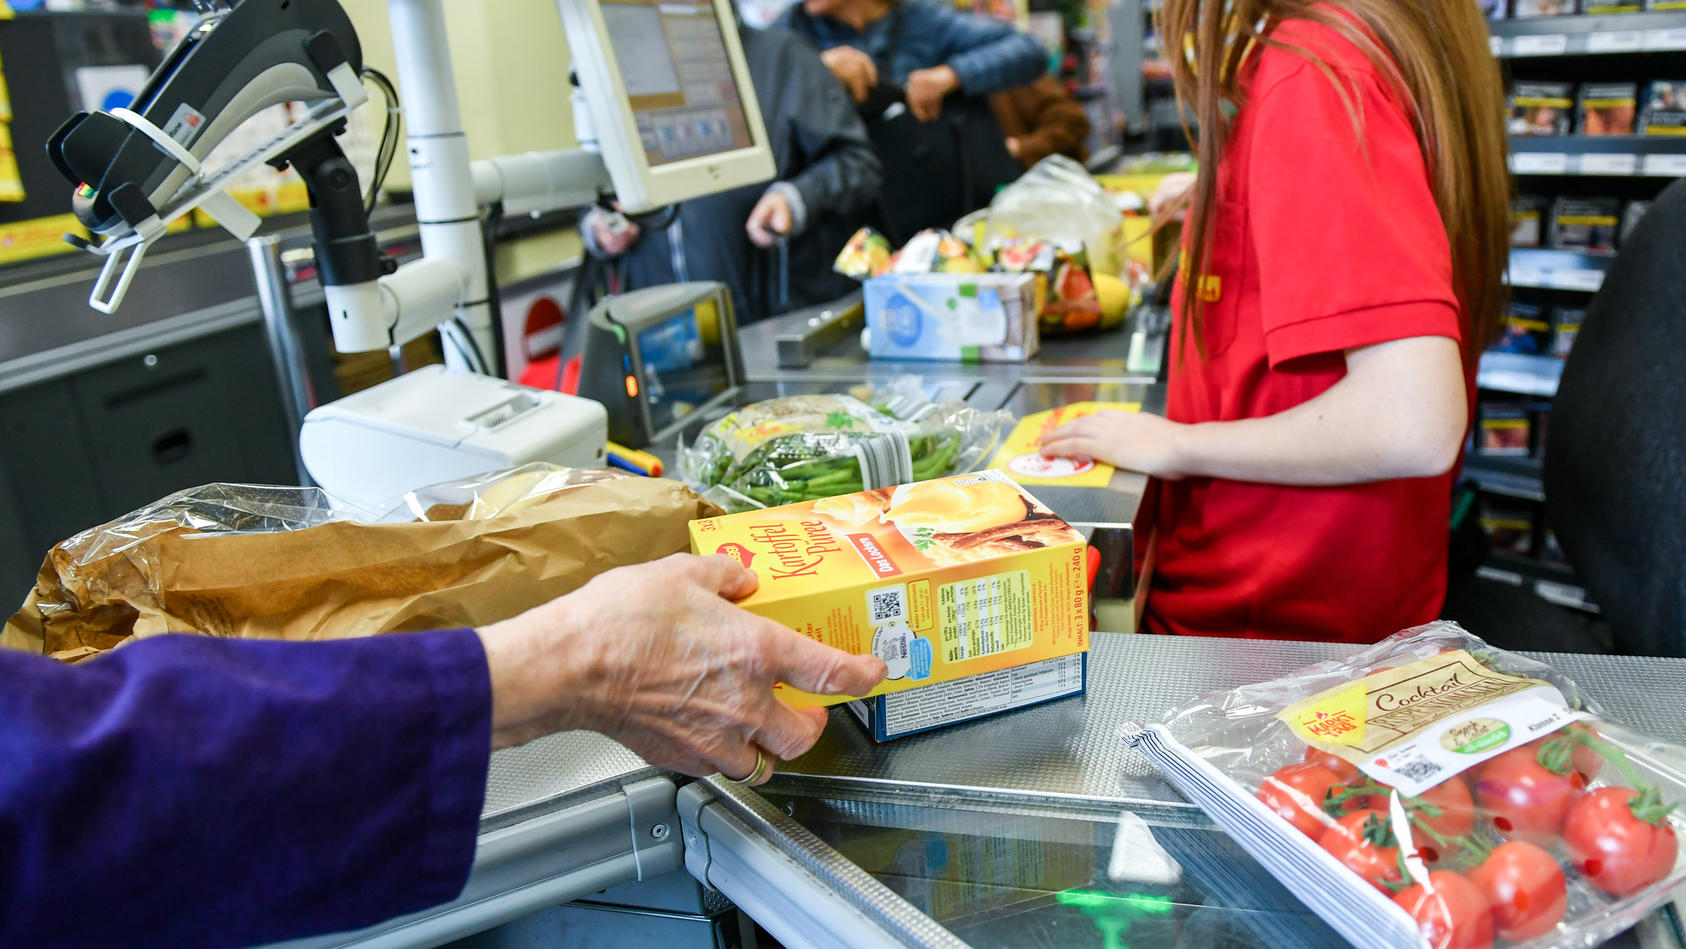 ARCHIV - 18.09.2019, Berlin: Eine Kundin nimmt in einem Supermarkt Waren vom Band an der Kasse, nachdem eine Kassiererin die Waren gescannt hat. Deutsche Verbraucher und Unternehmen müssen sich nach Einschätzung des Ifo-Instituts auf weitere Preiserh